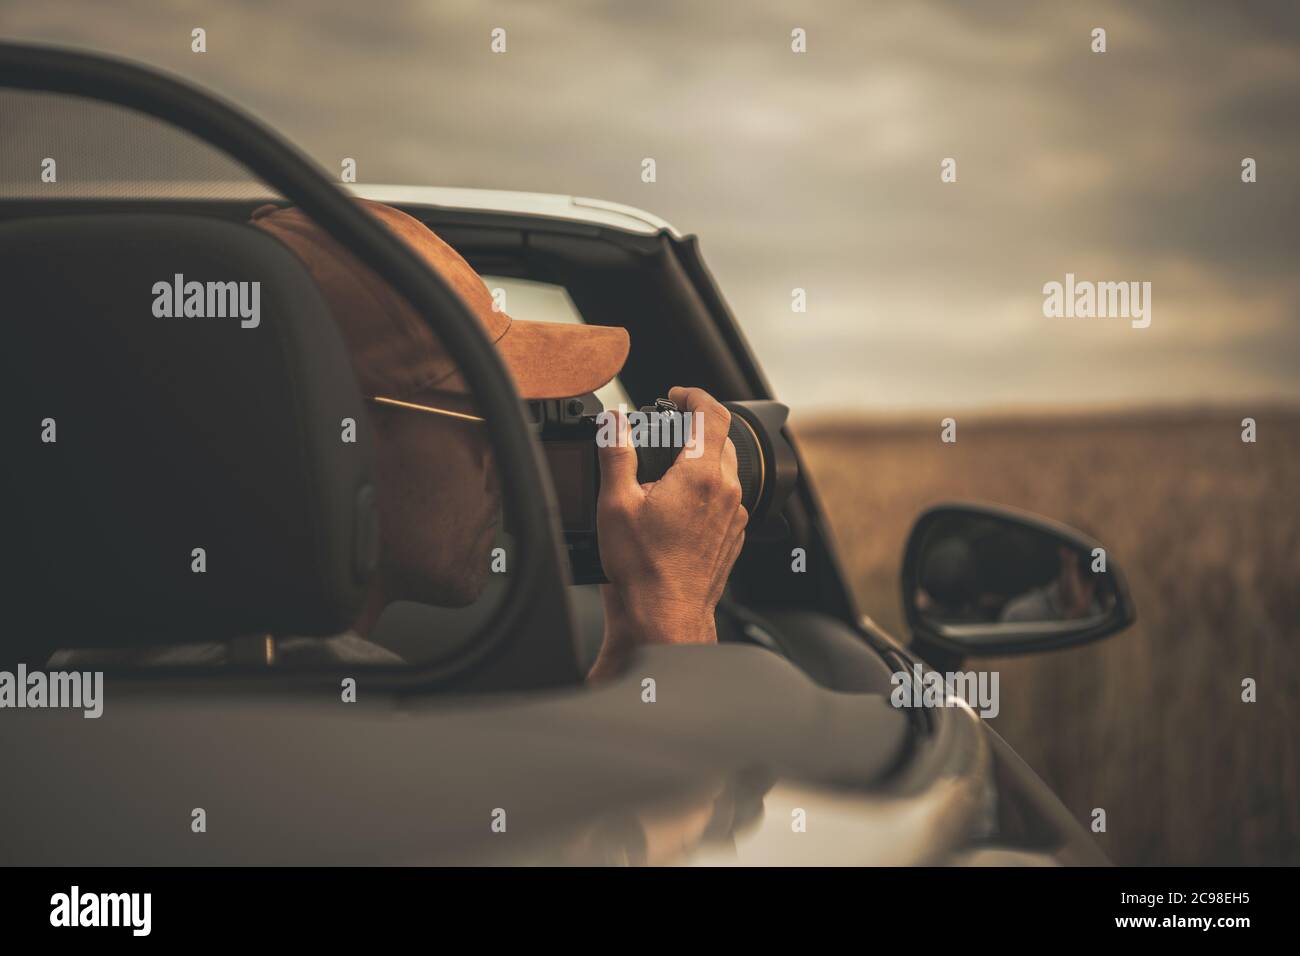 Kaukasischer Tourist in seinen 40er Jahren, der während der Fahrt Bilder von seinem Cabrio-Fahrzeug nimmt. Thema Reise- und Tourismusbranche. Stockfoto